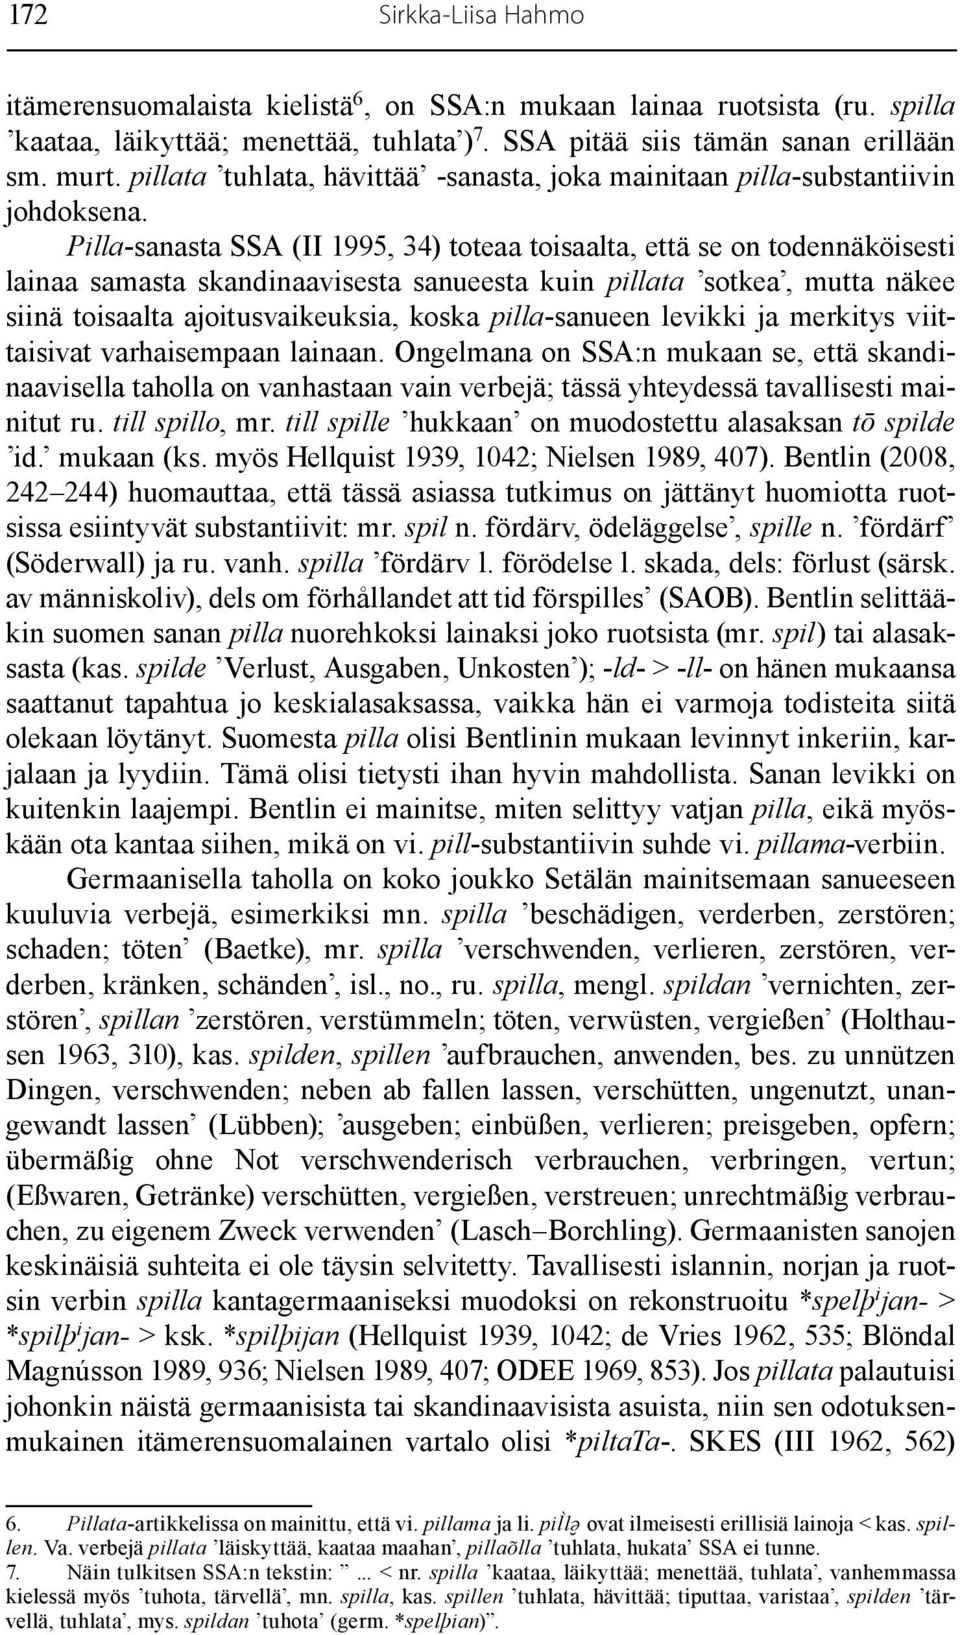 Pilla-sanasta SSA (II 1995, 34) toteaa toisaalta, että se on todennäköisesti lainaa samasta skandinaavisesta sanueesta kuin pillata sotkea, mutta näkee siinä toisaalta ajoitusvaikeuksia, koska